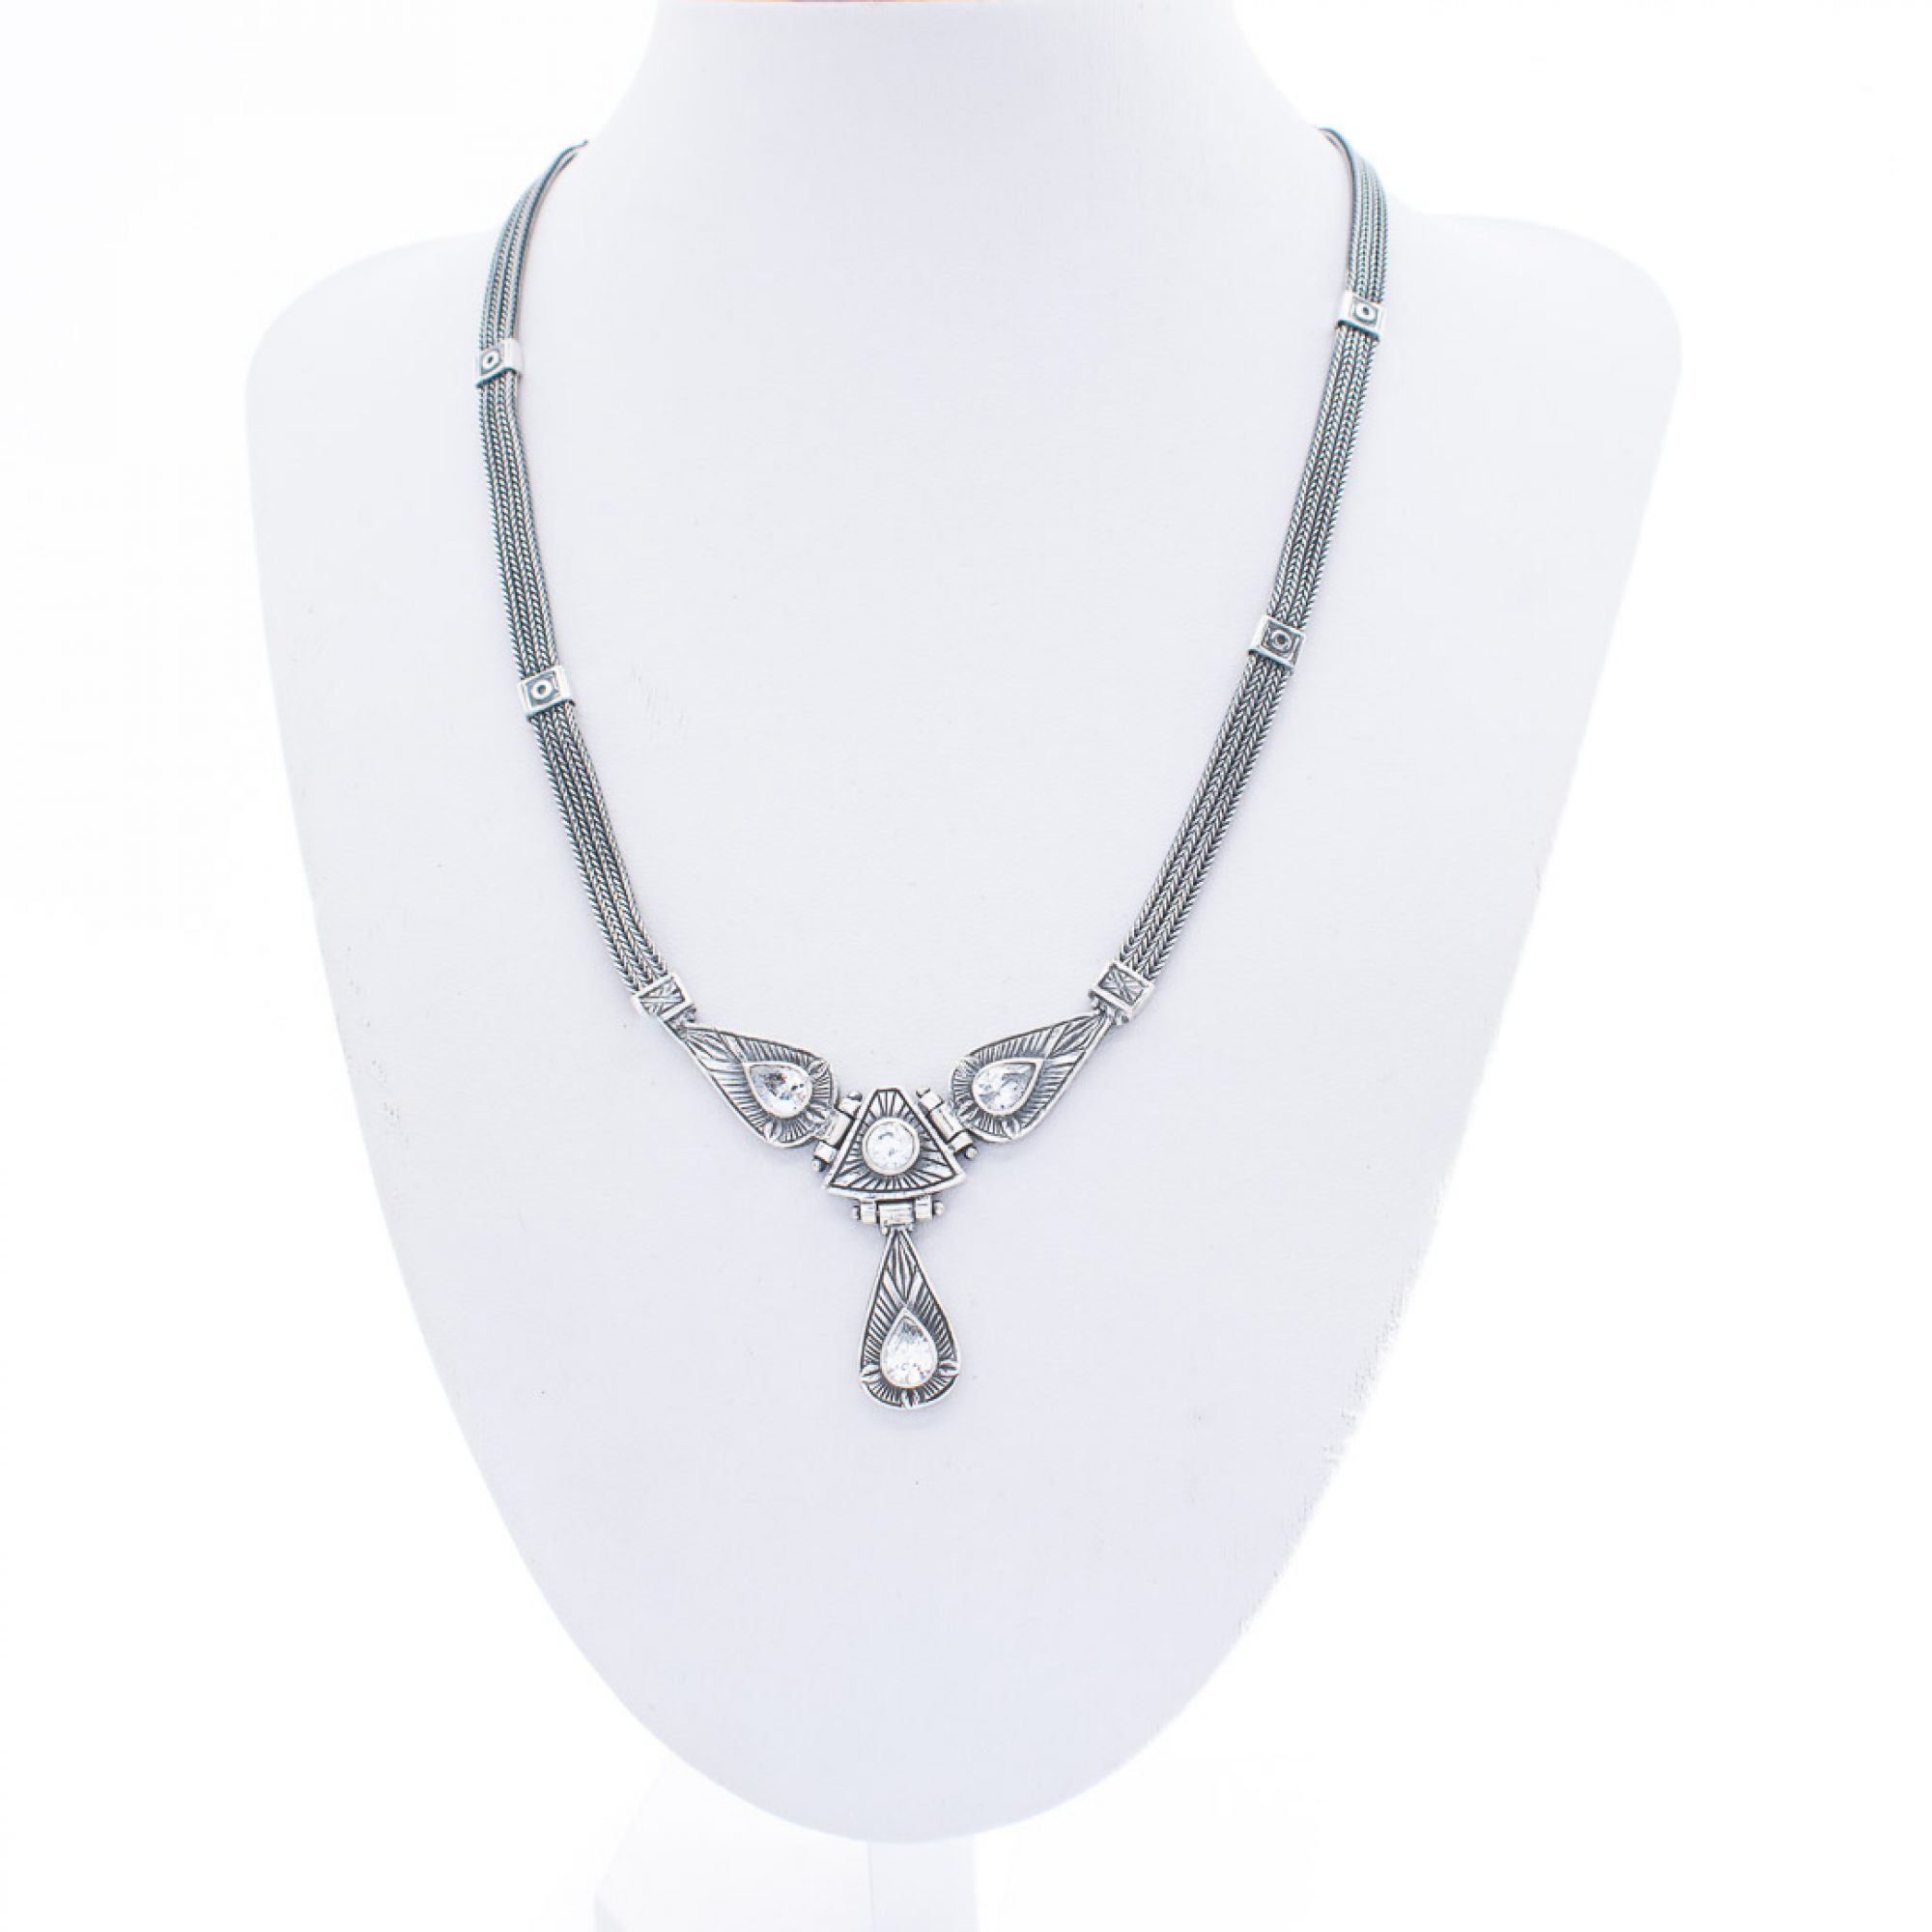 Oxidised necklace with zircon stones